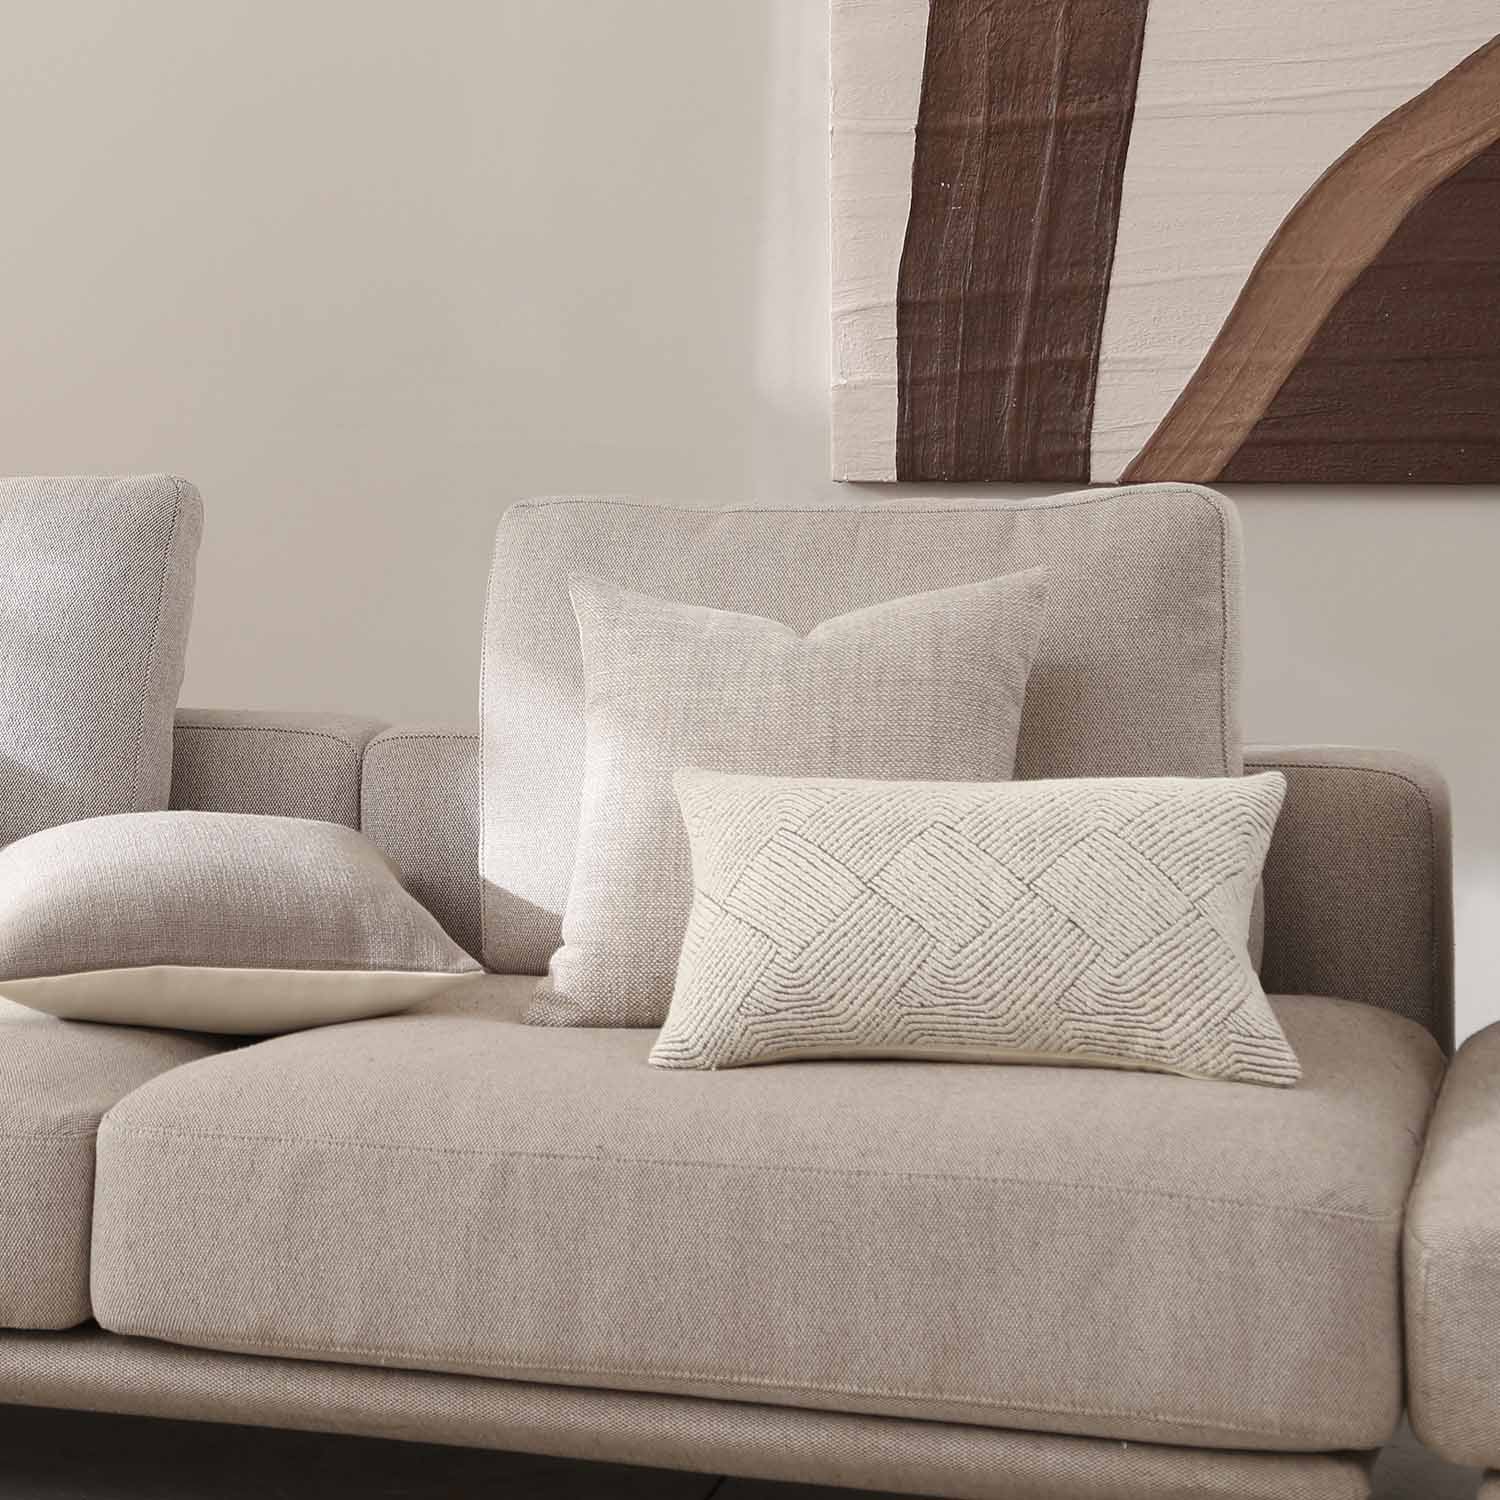 Savona Textured Linen Pillow Cover-Sofa Linen Pillow Covers